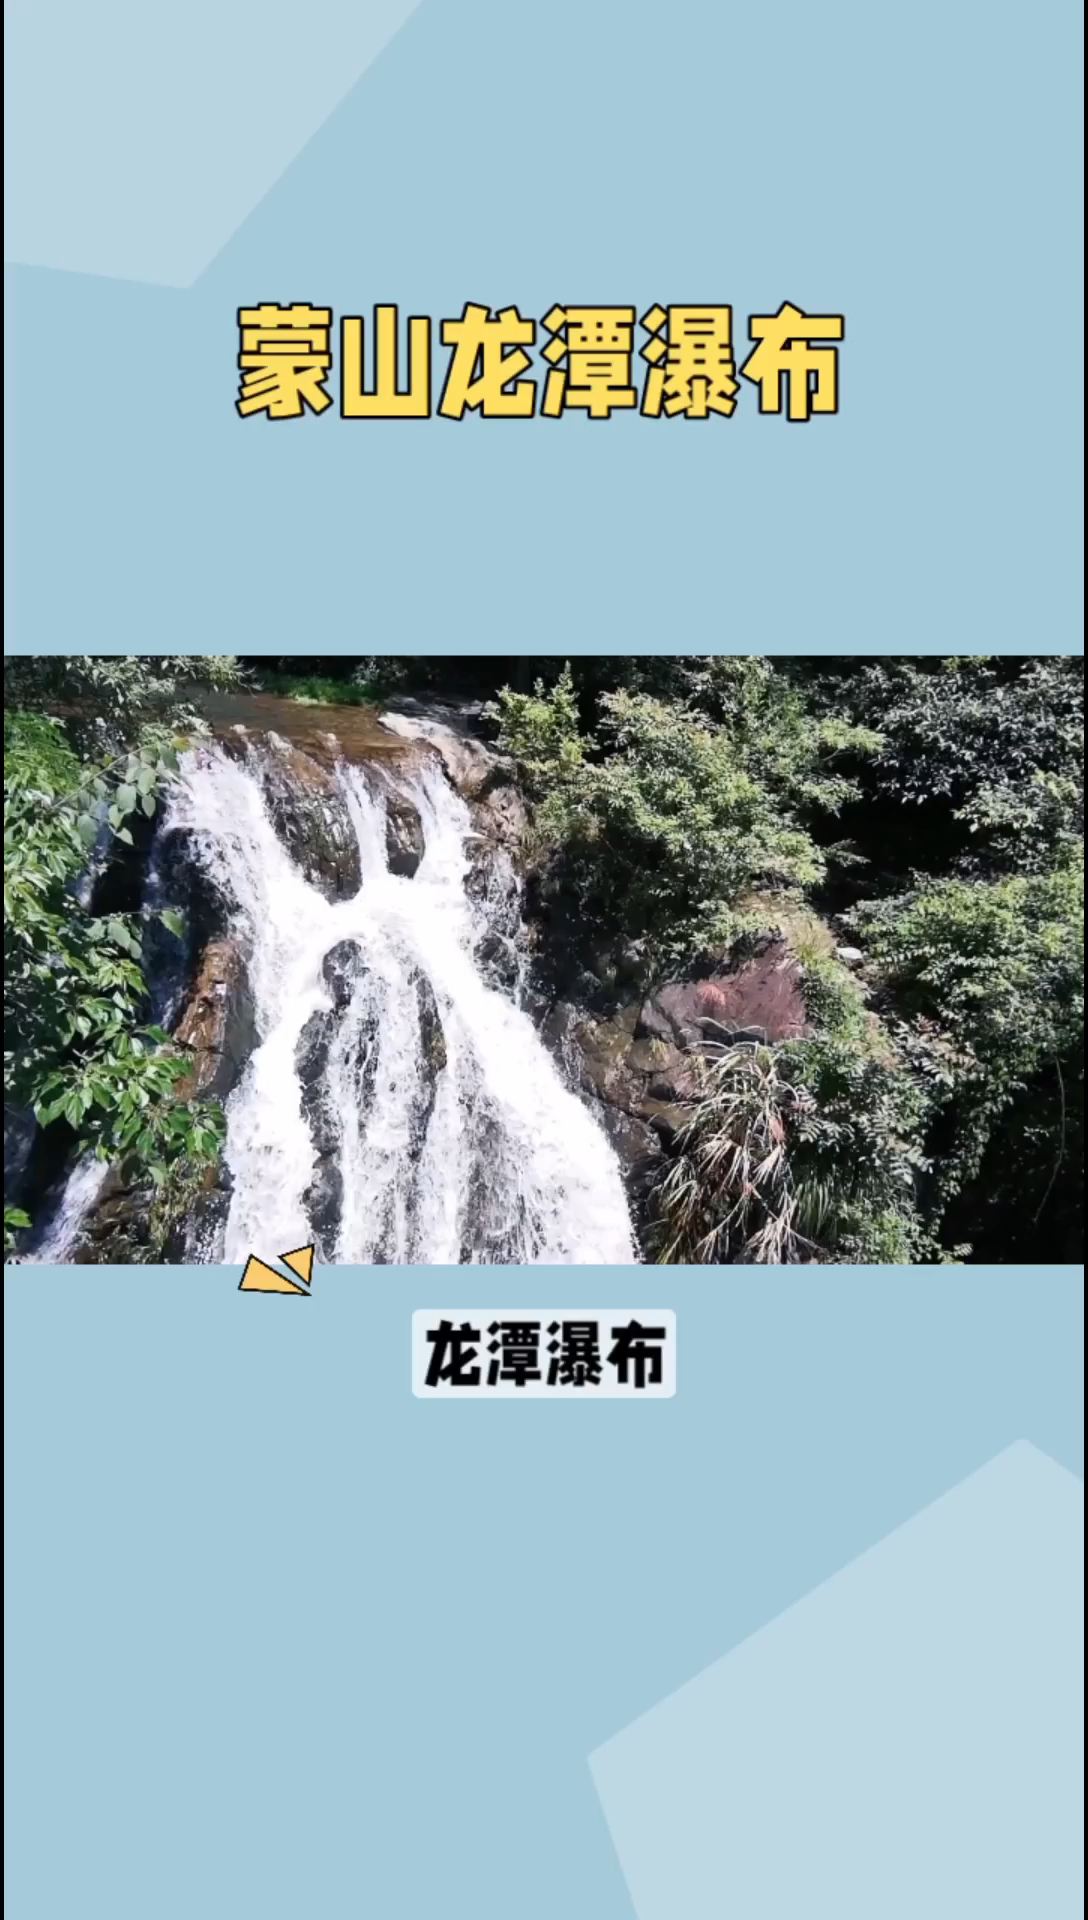 龙潭瀑布，广西梧州市蒙山县石龙冲的瑰宝